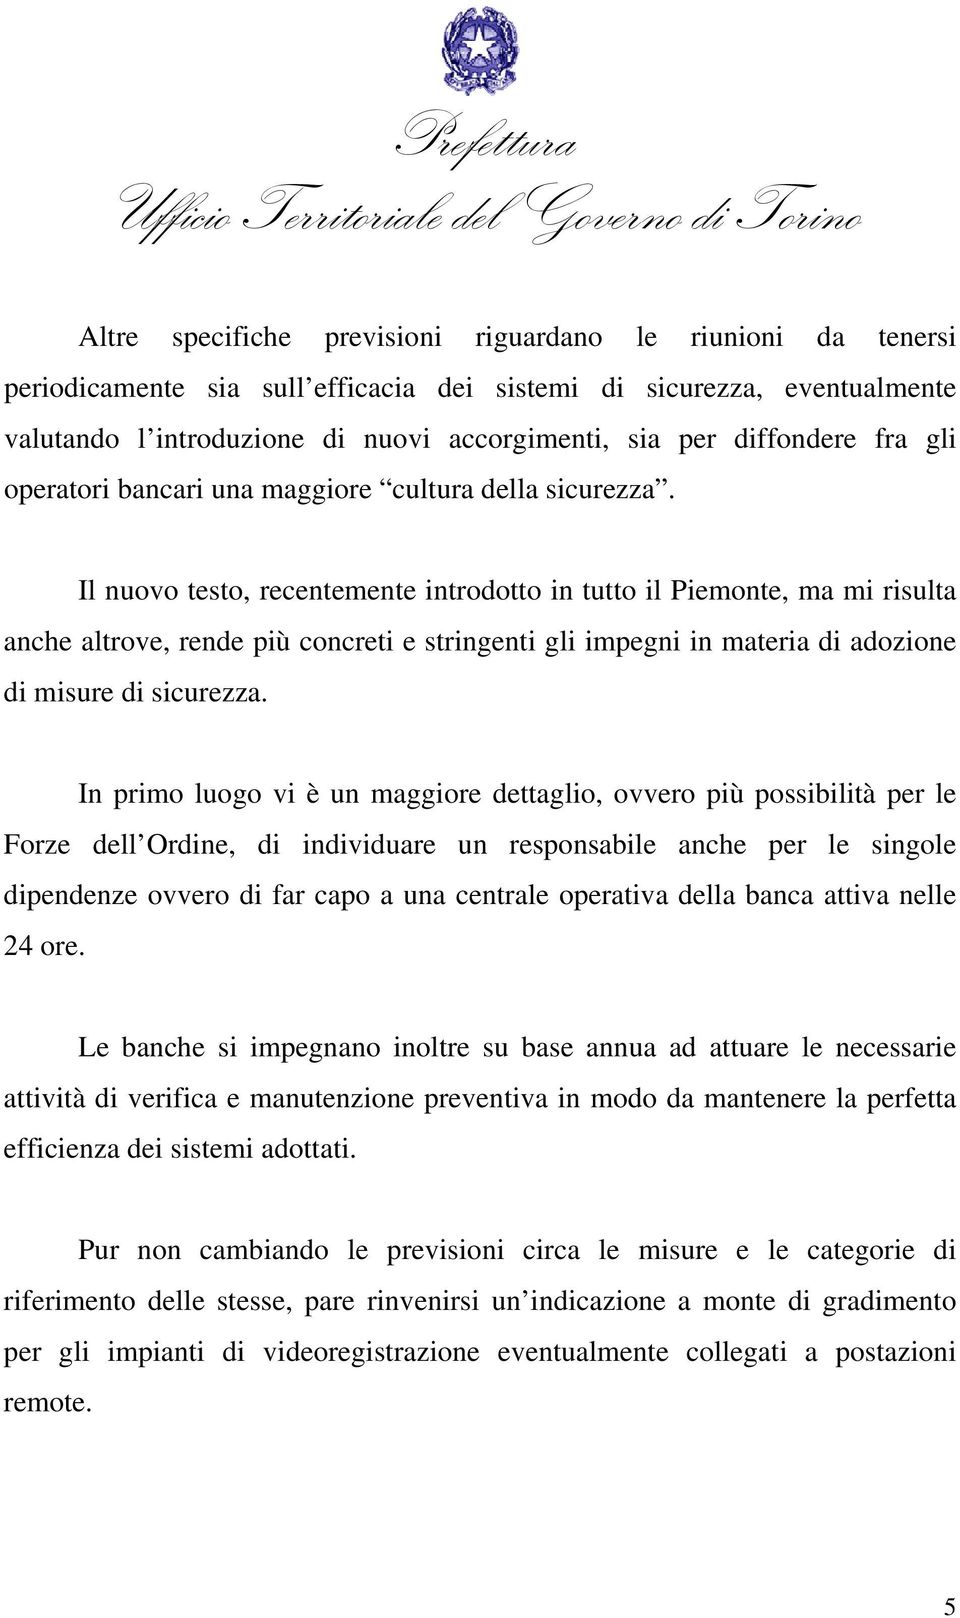 Il nuovo testo, recentemente introdotto in tutto il Piemonte, ma mi risulta anche altrove, rende più concreti e stringenti gli impegni in materia di adozione di misure di sicurezza.